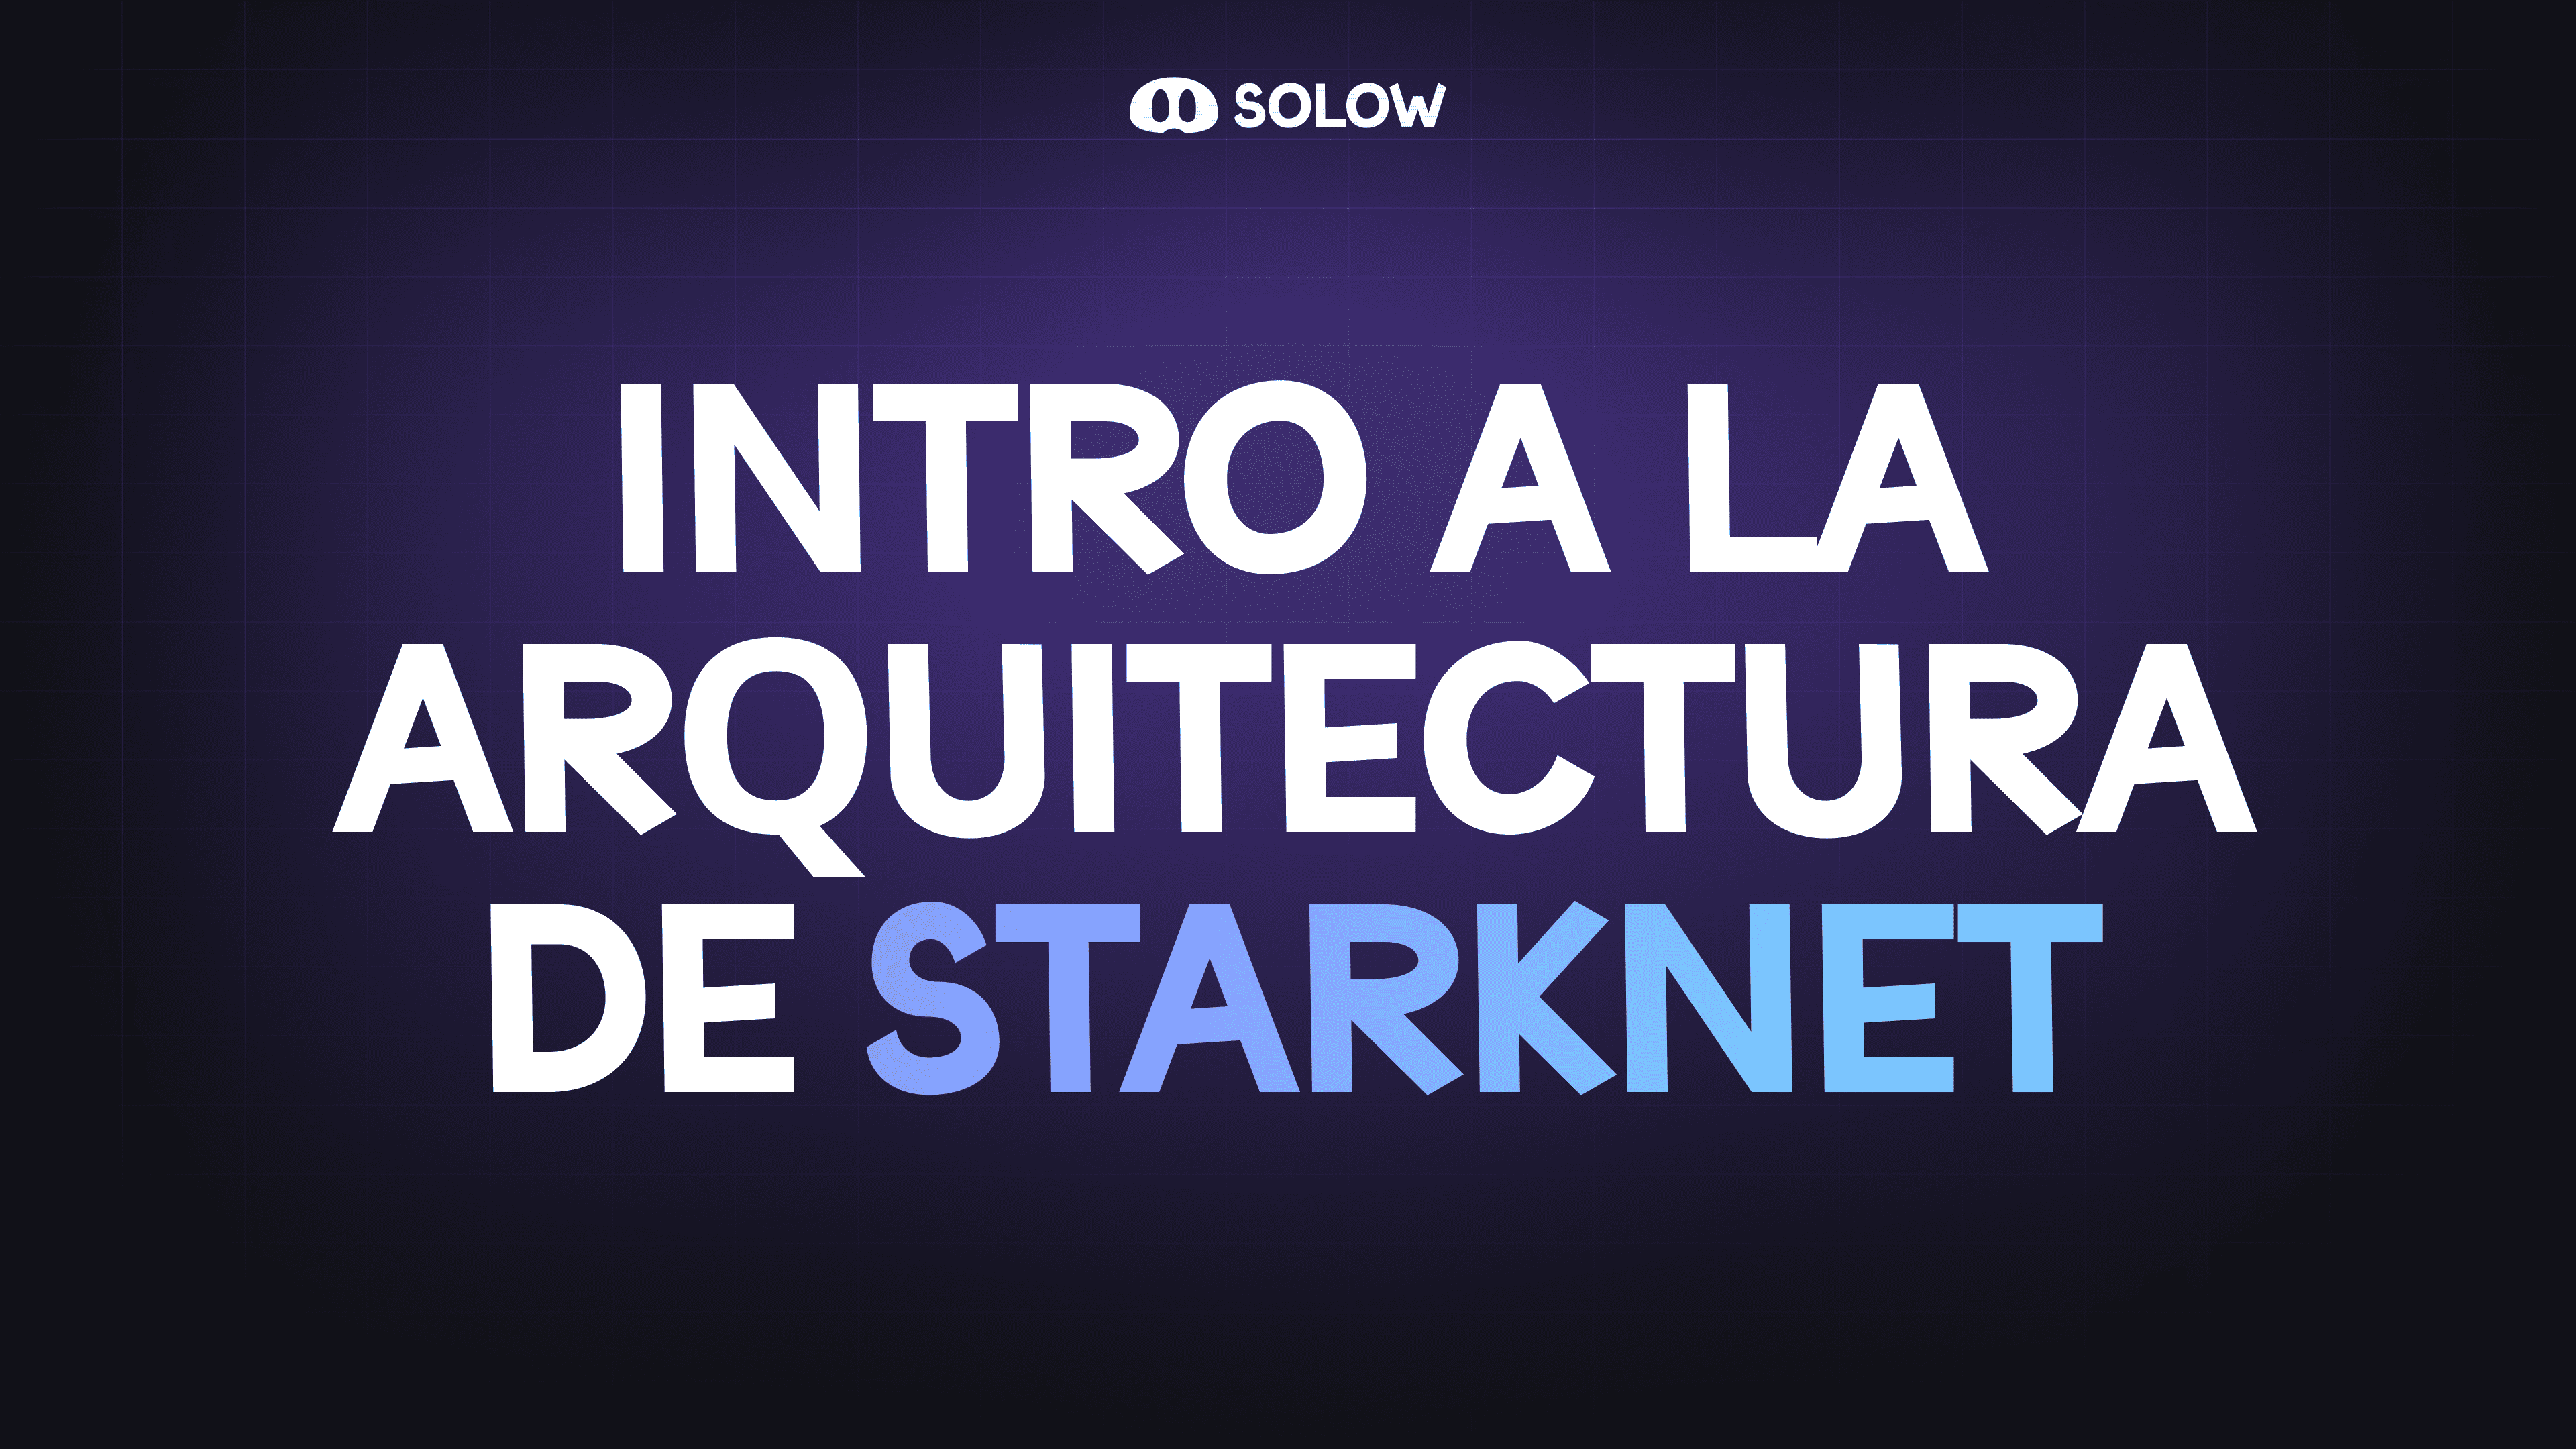 Intro a la Arquitectura de Starknet